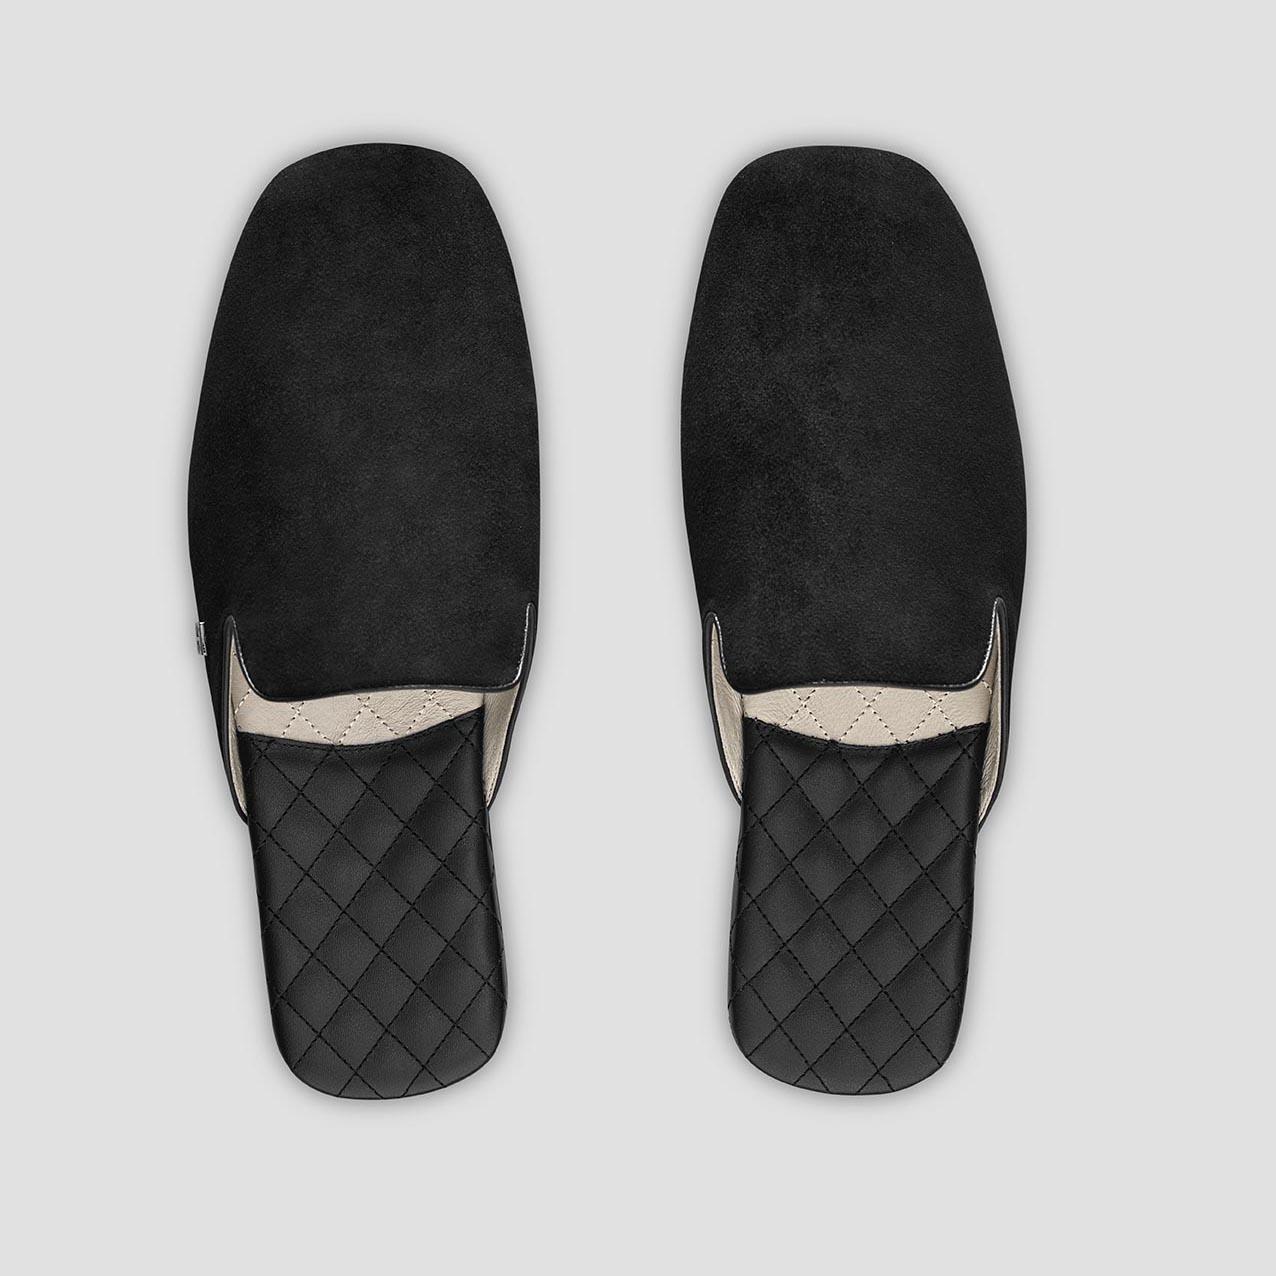 тапочки togas реон черные мужские кожаные размер 40 41 Тапочки Togas Реон черные мужские кожаные, размер 46-47